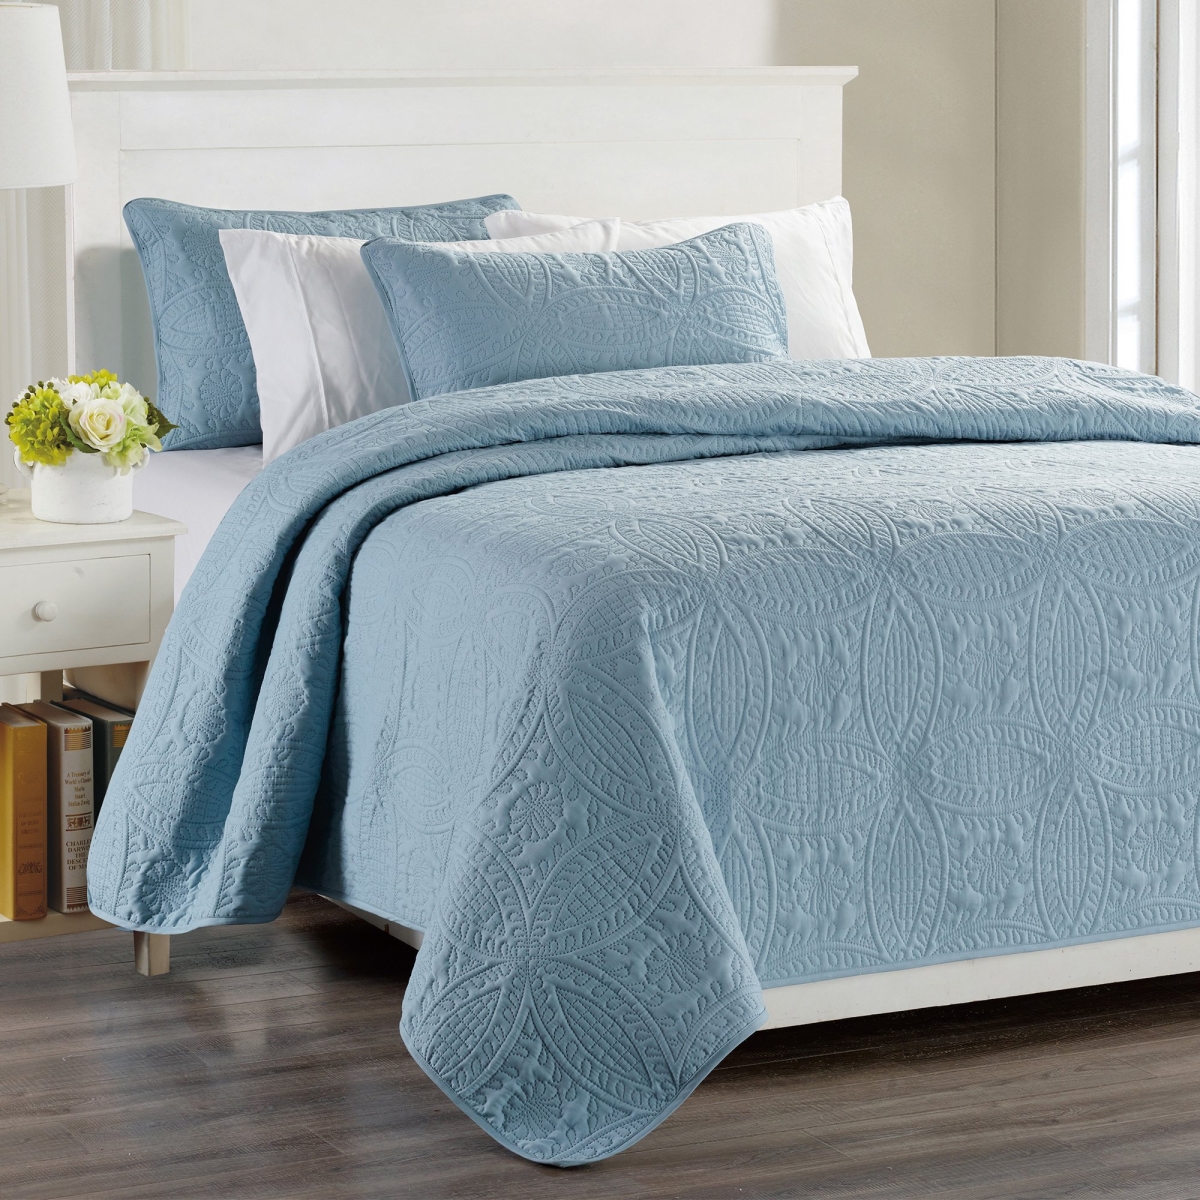 3 Piece Millano Chambrey Quilt Set, Blue - Queen Size